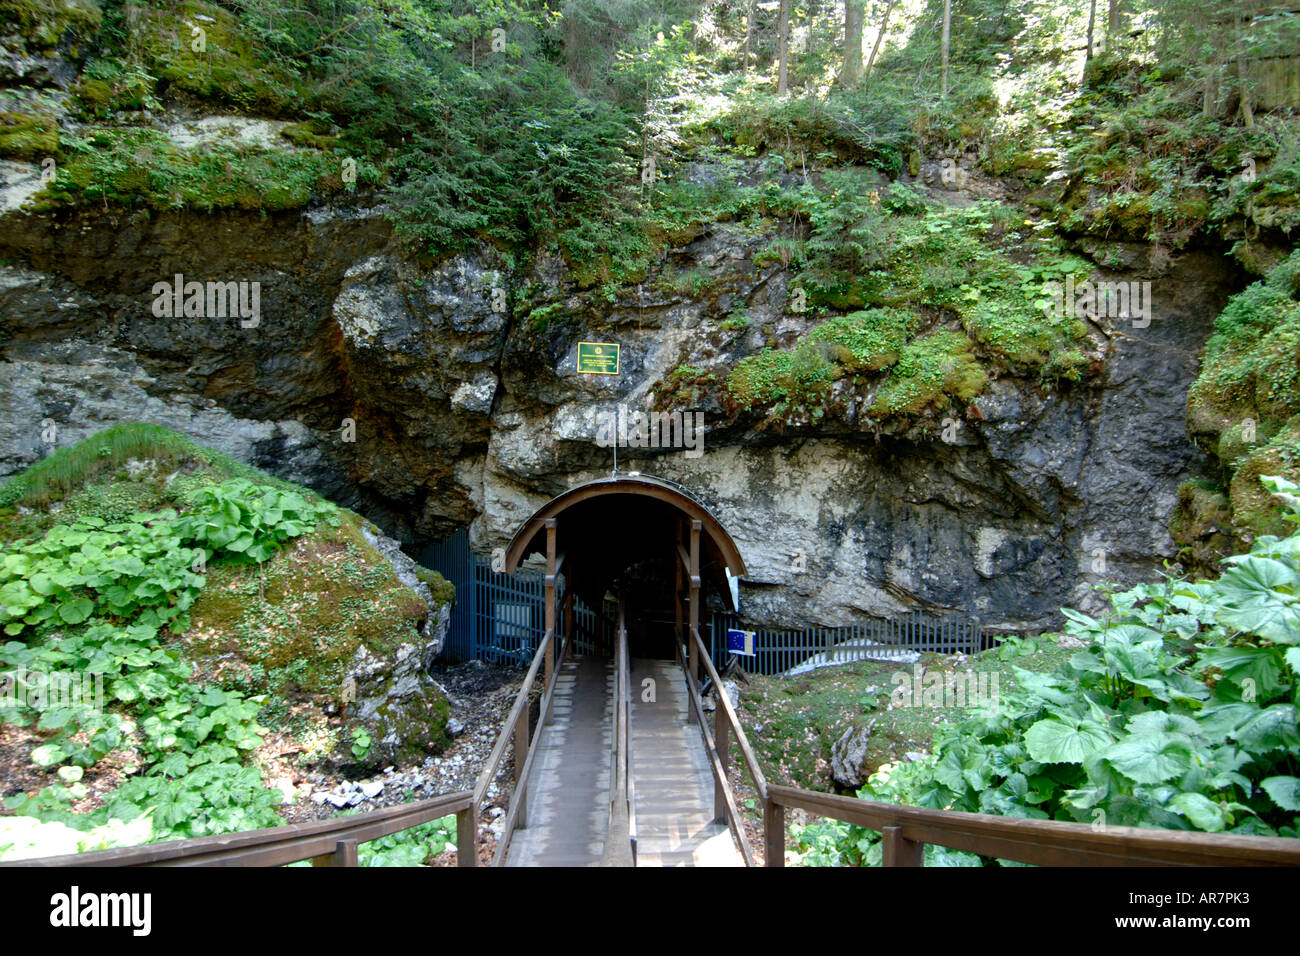 Entrance to the Dobsinska Ladova Jaskyna Ice Cave in Slovakia. Stock Photo